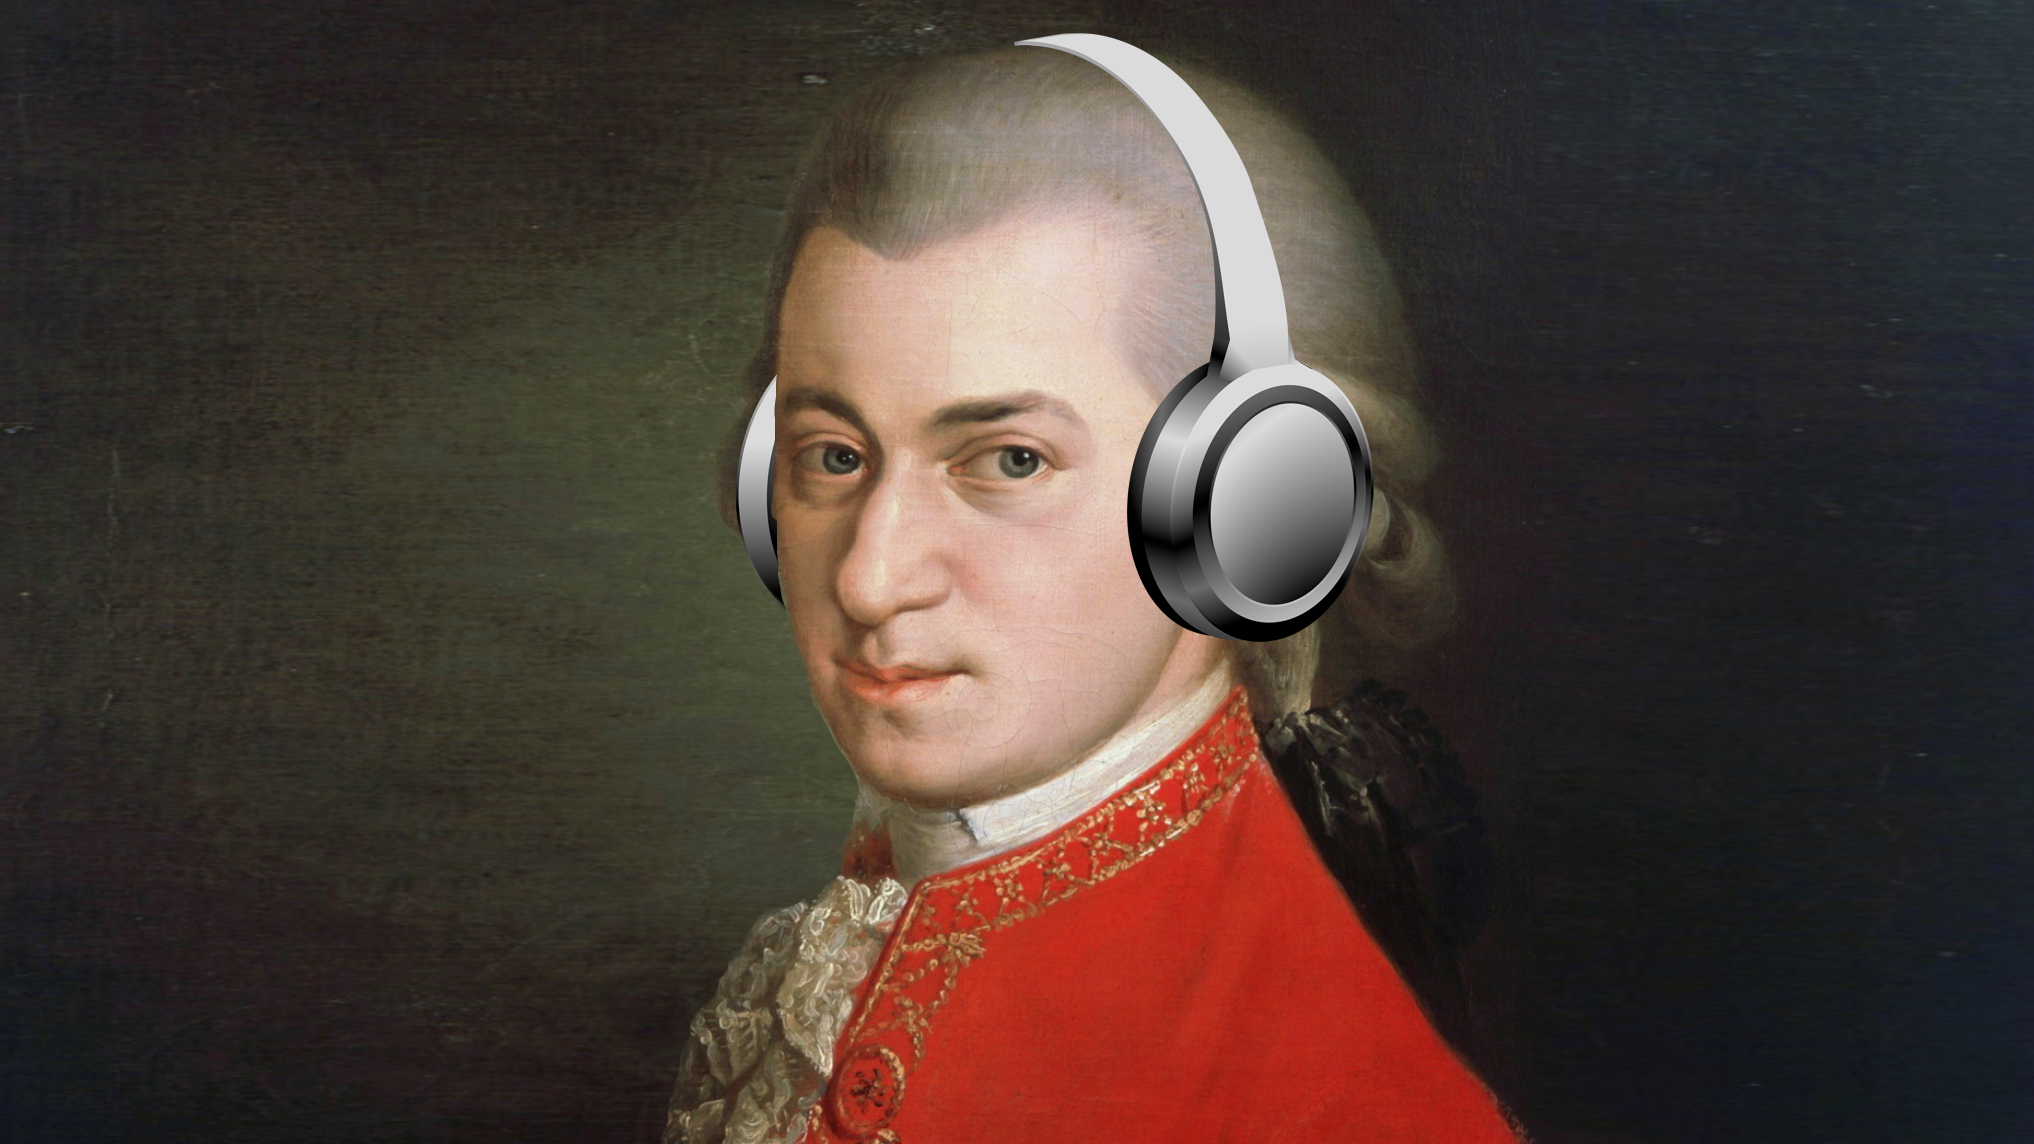 Mozart with earphones